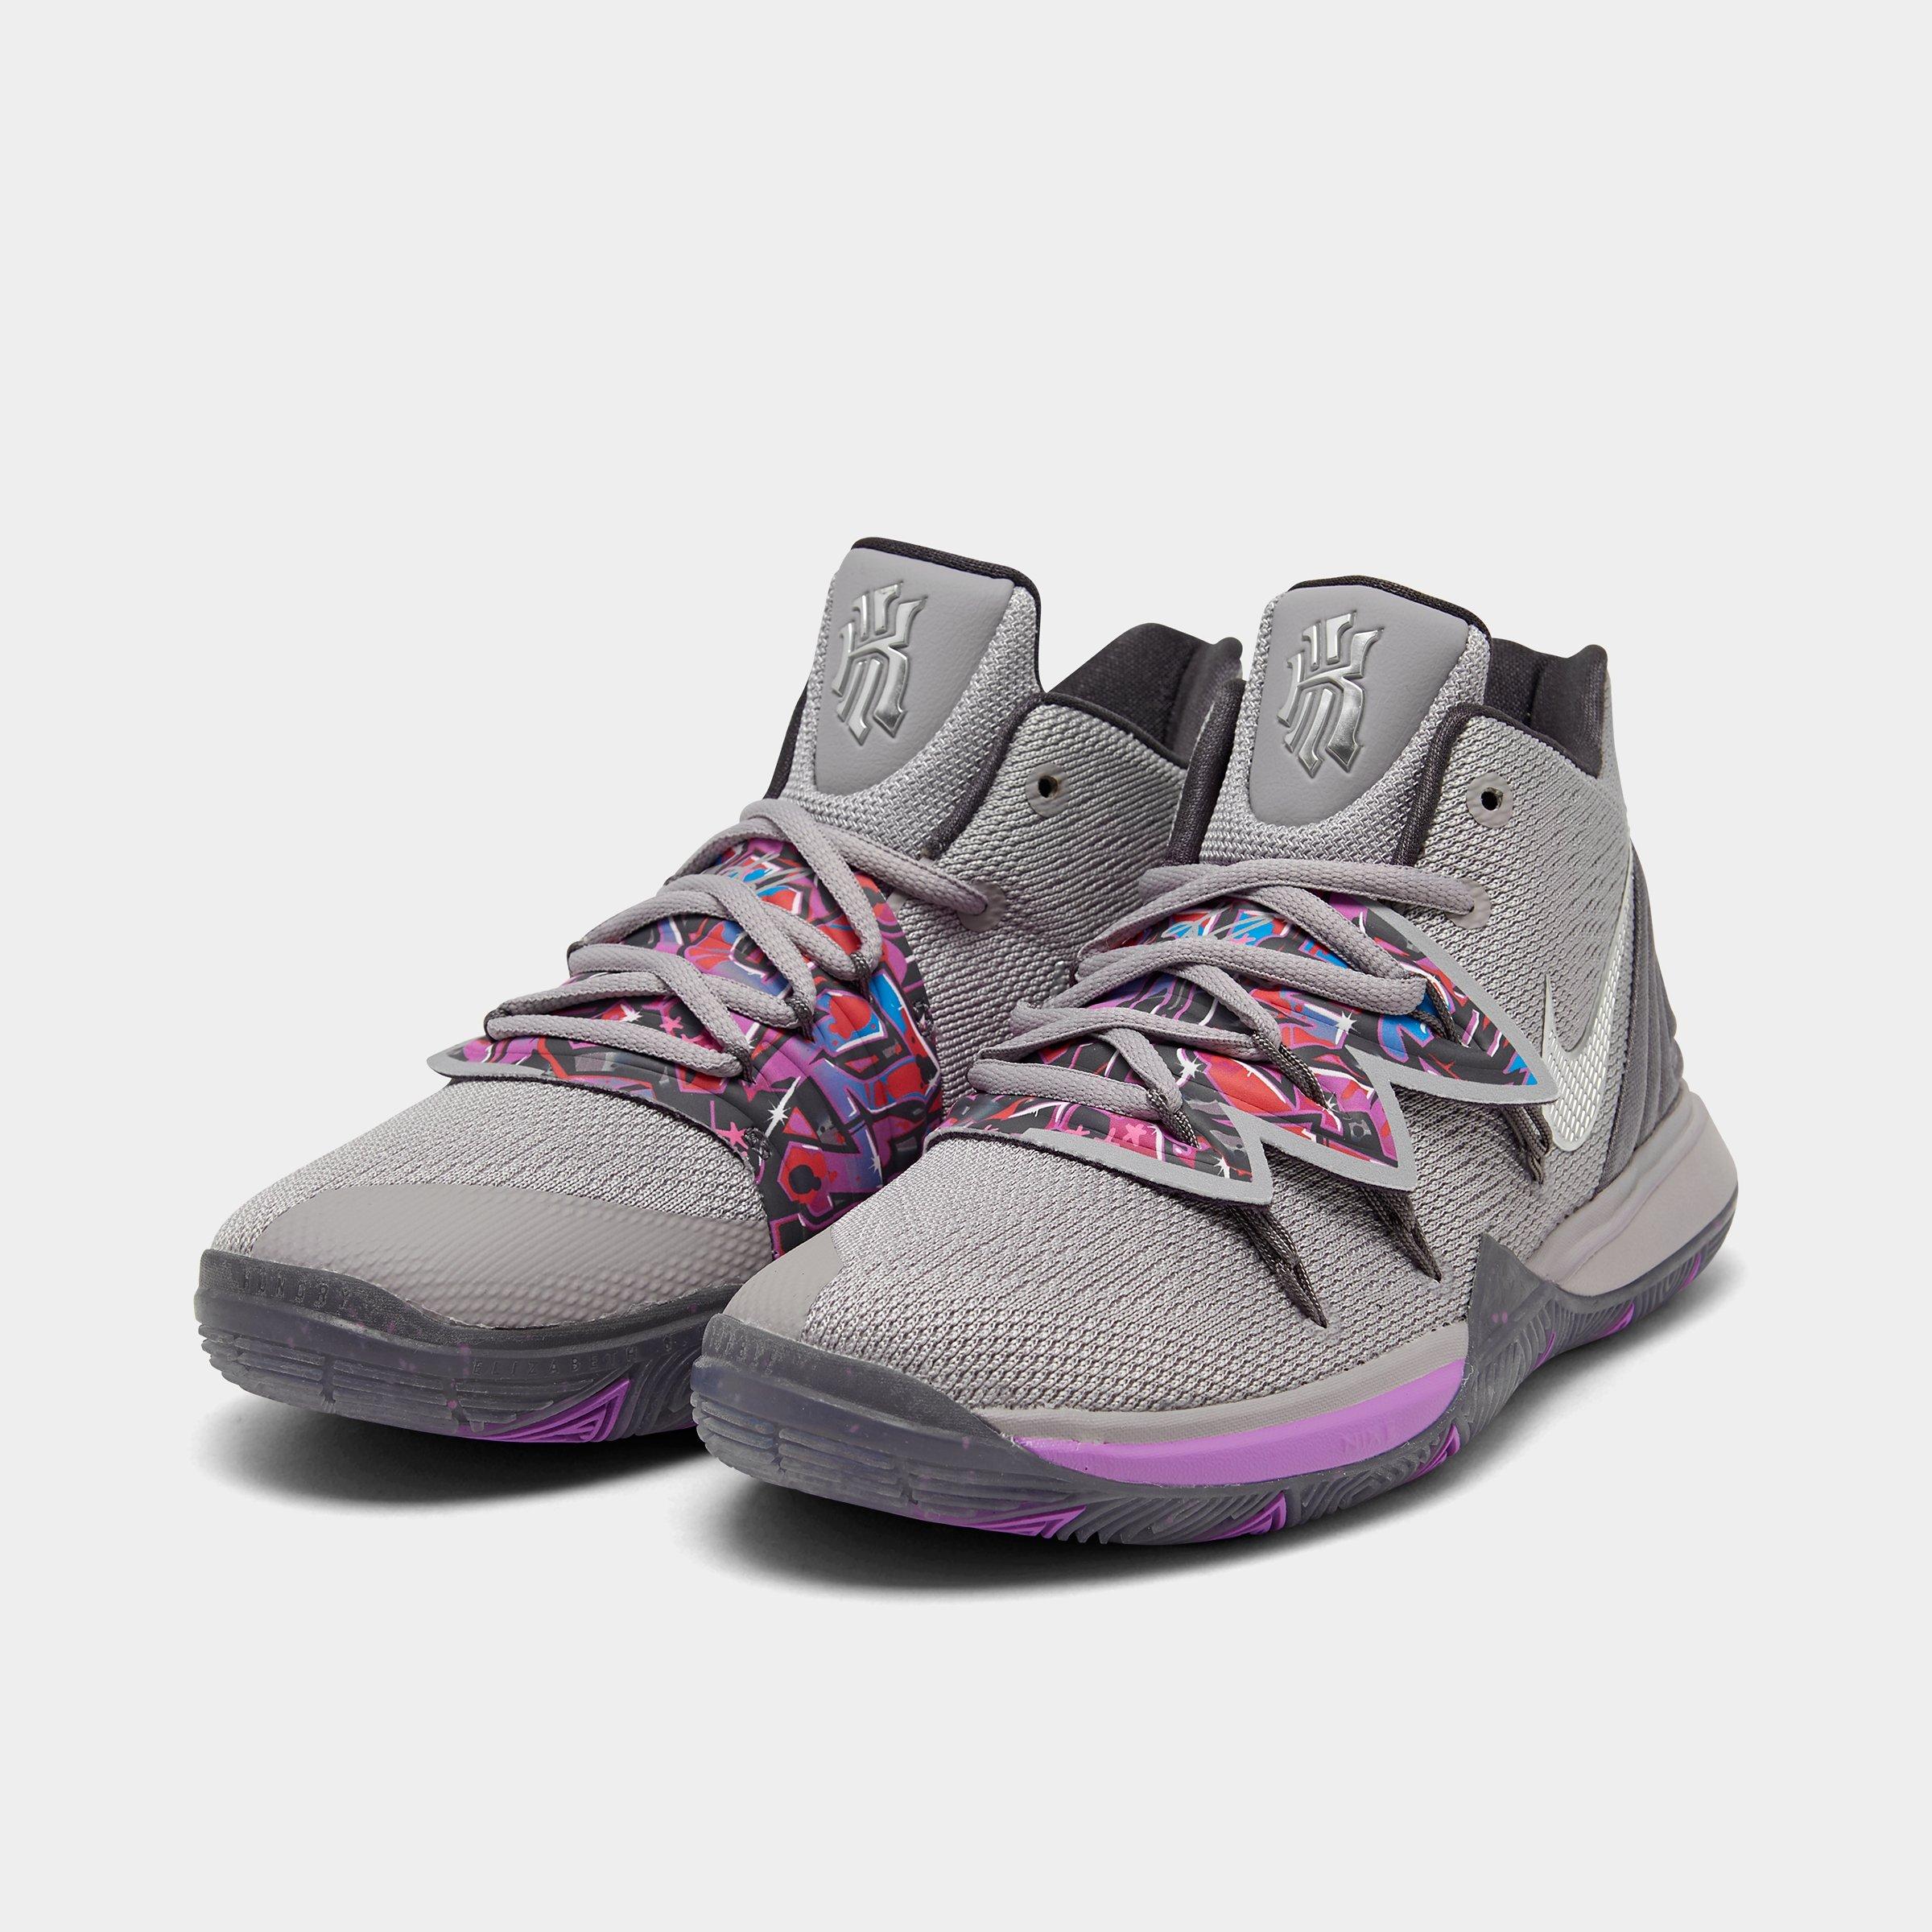 Nike Kyrie 5 Patrick Star Lotus Pink CN4490 600 Toddler Size